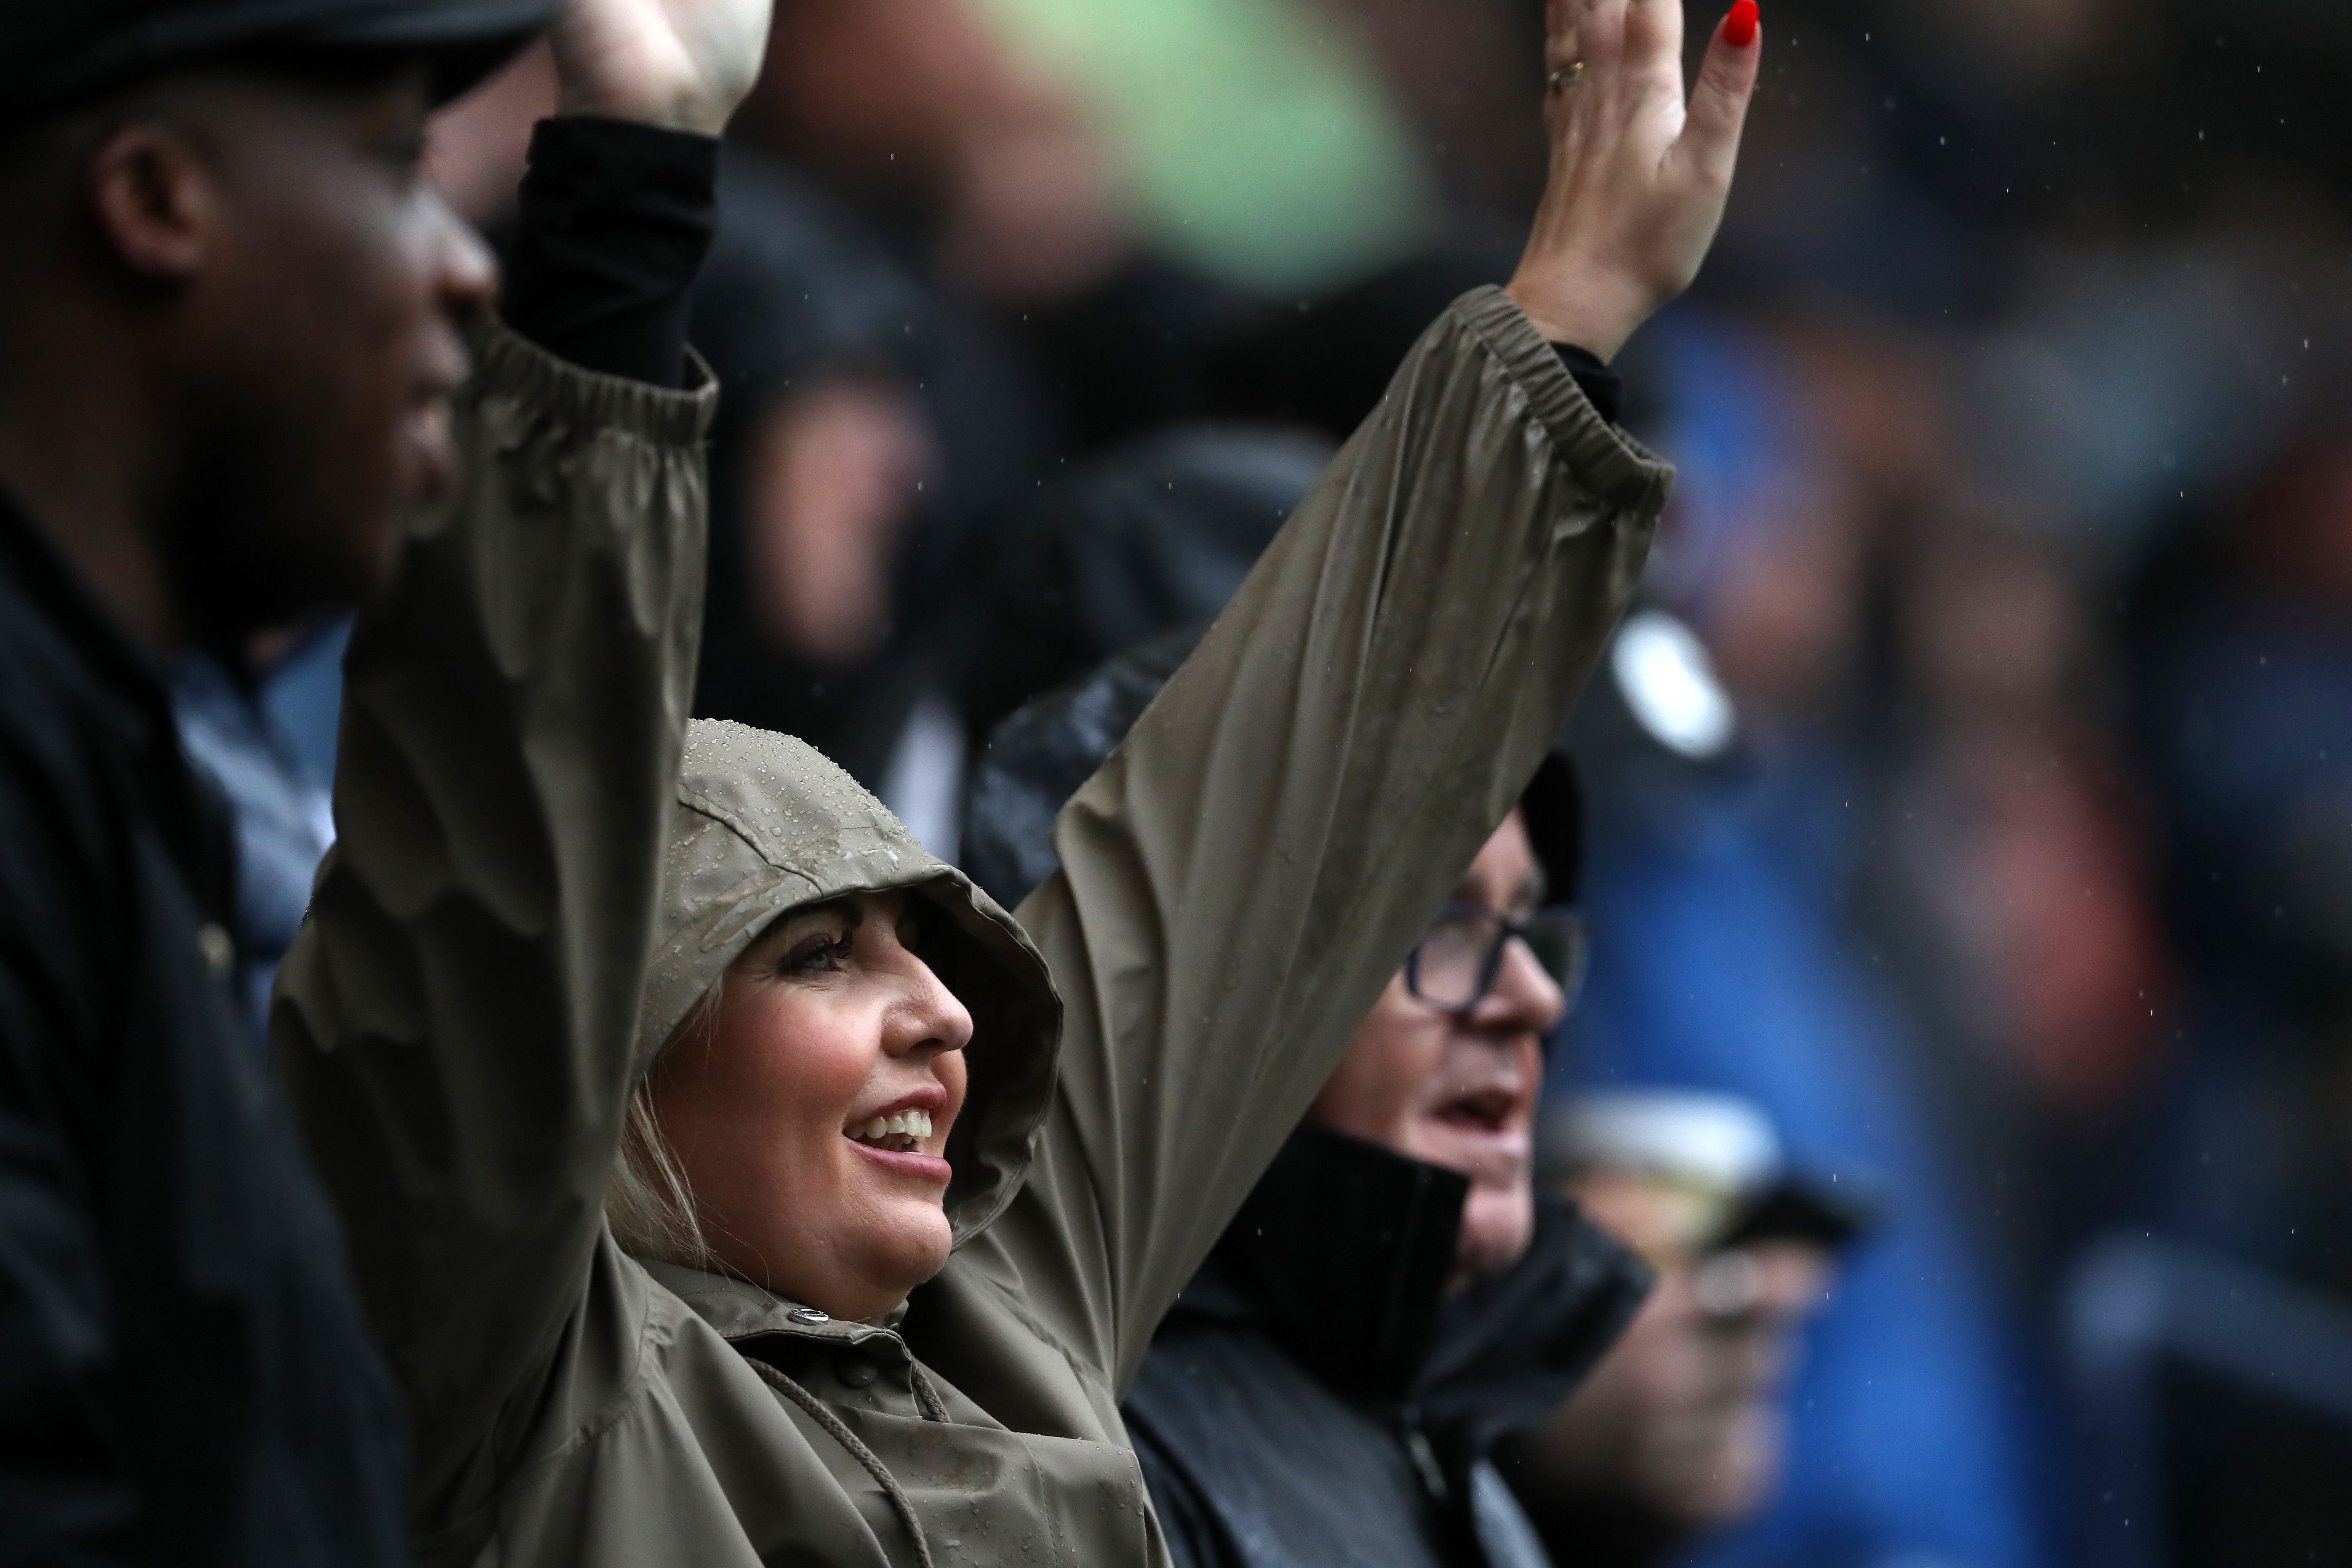 A female Albion fan cheering